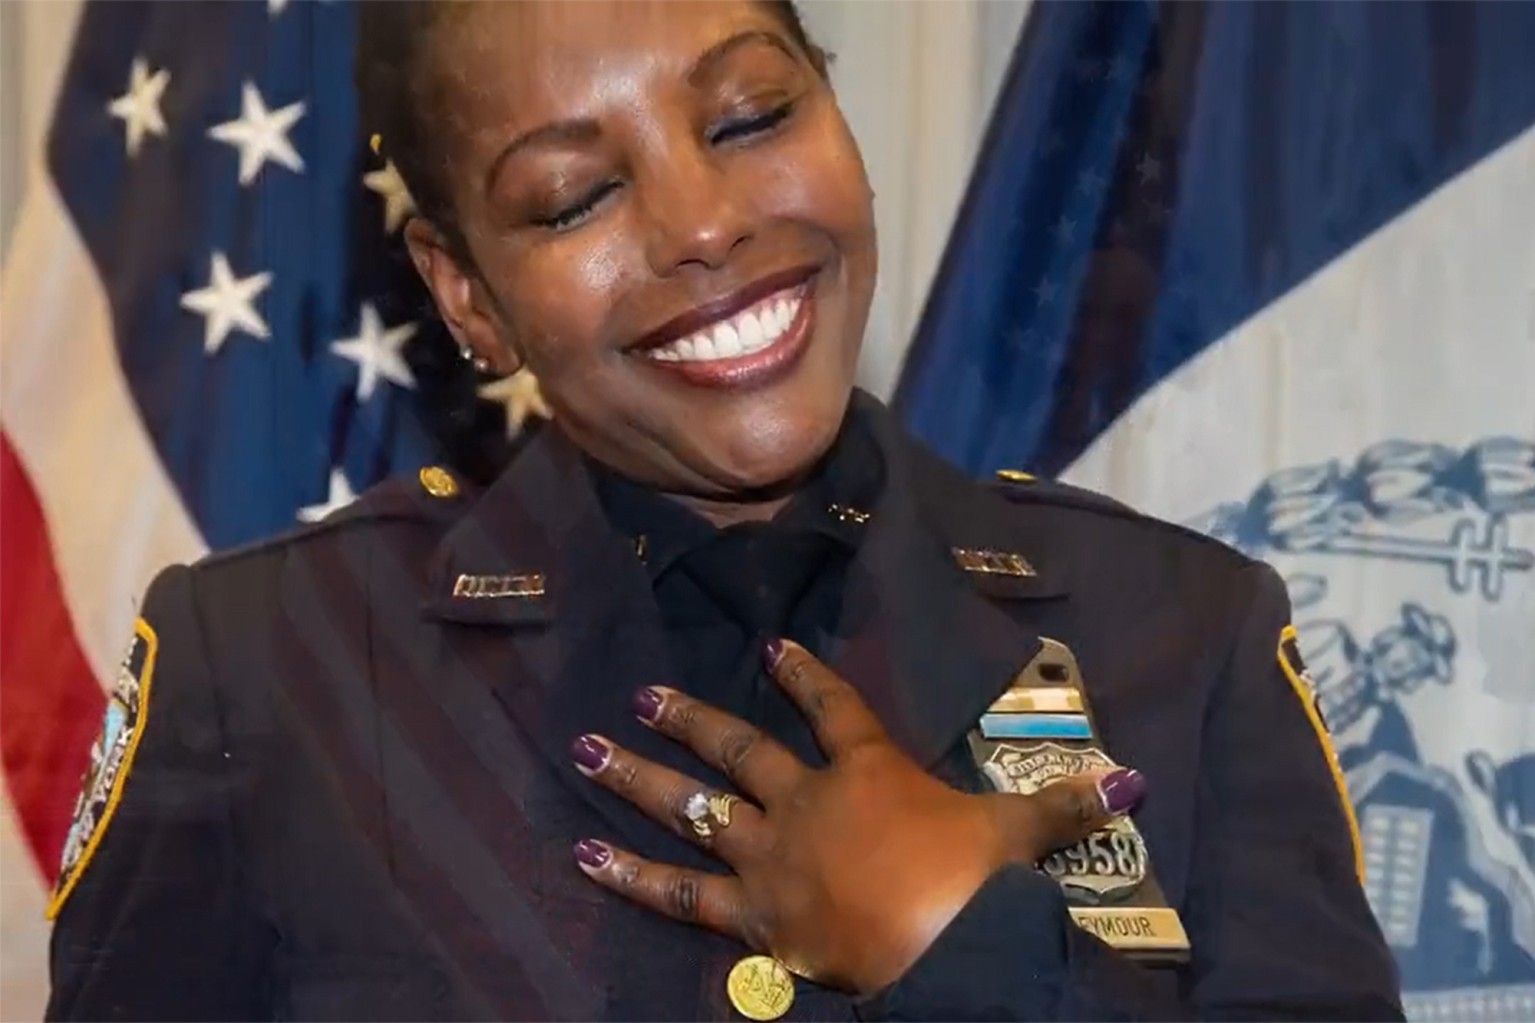 Policial é surpreendida com pedido de casamento inusitado nos EUA (Foto: Reprodução / NYPD)